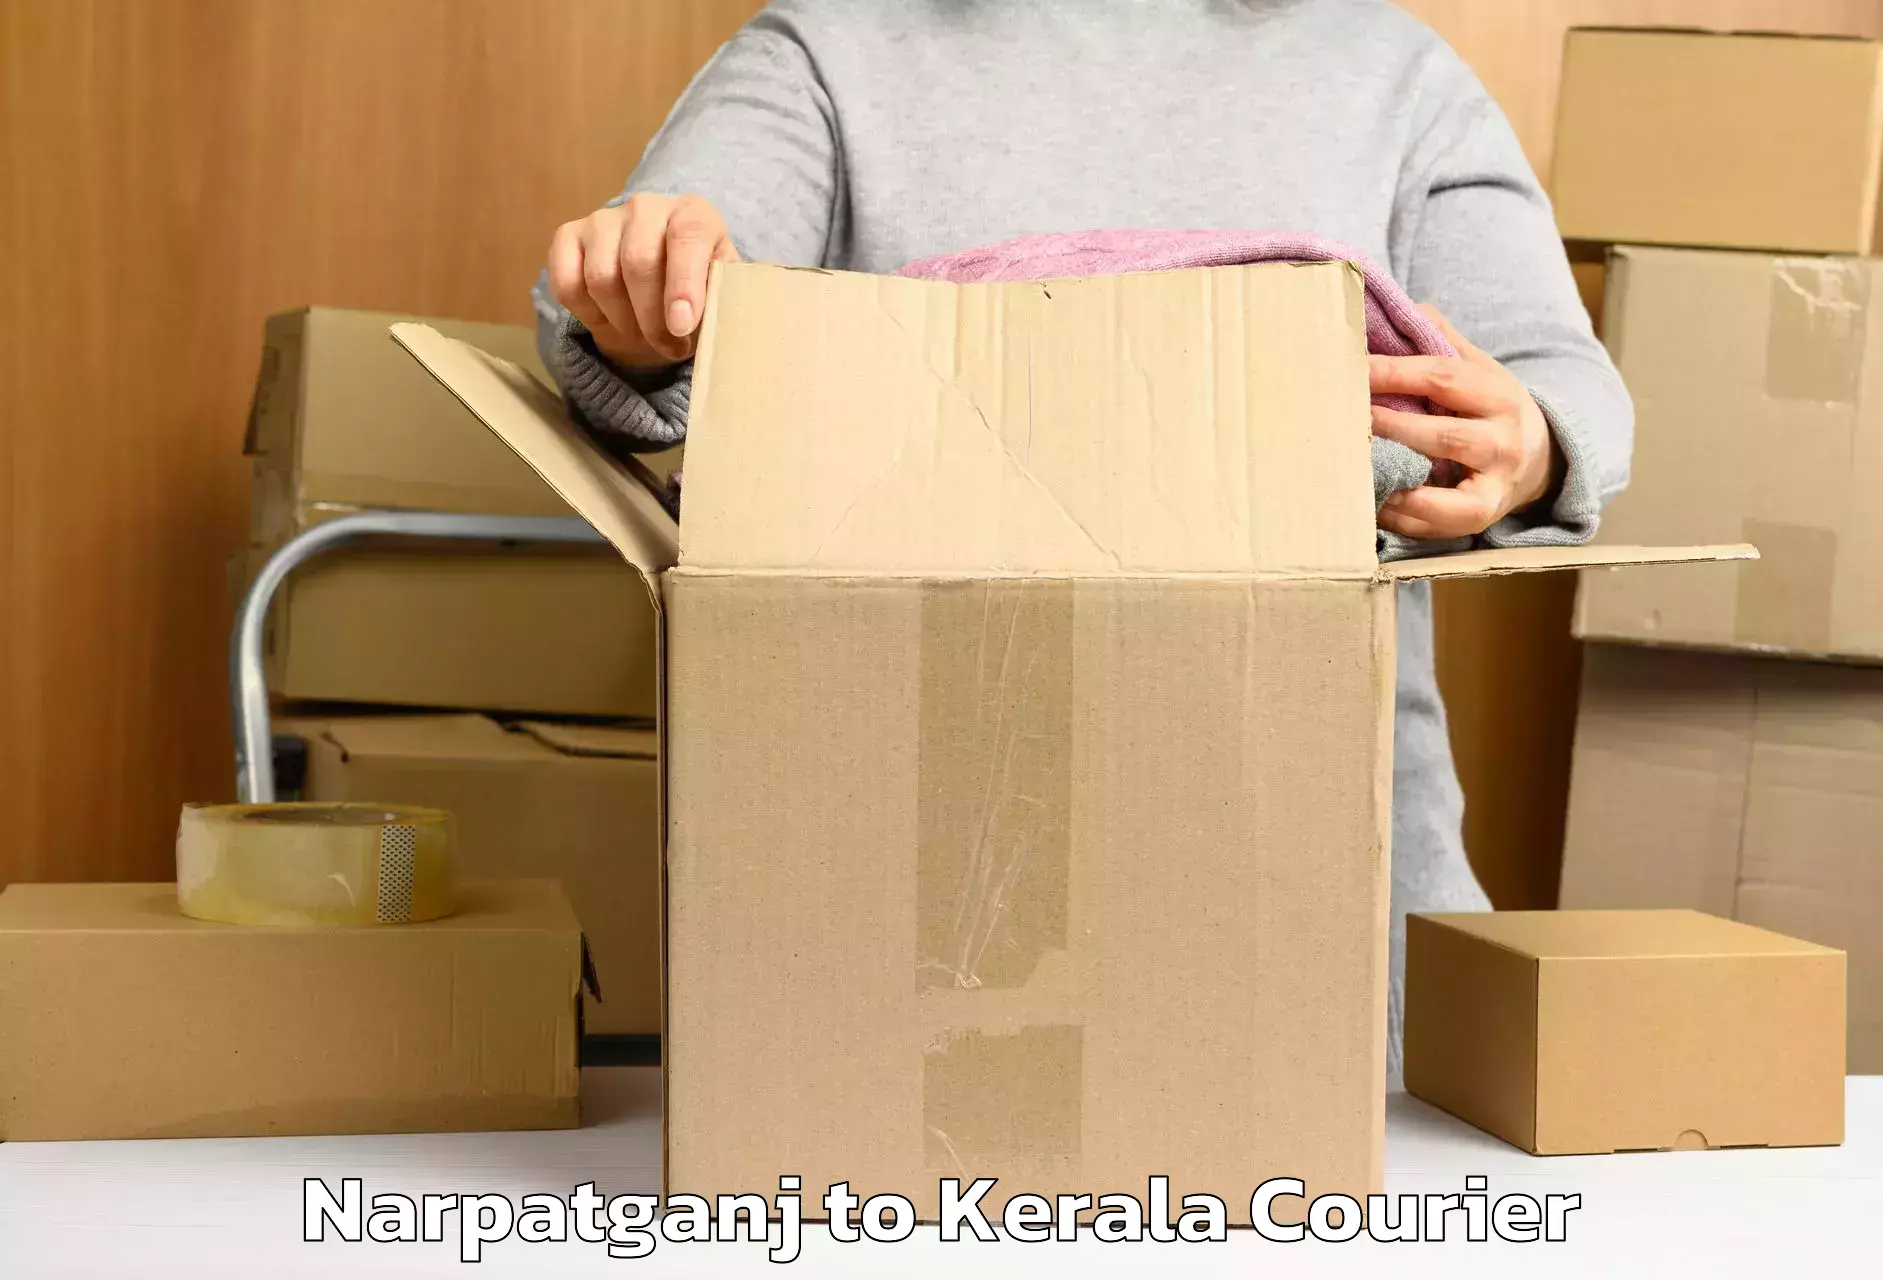 Baggage transport network Narpatganj to Kerala